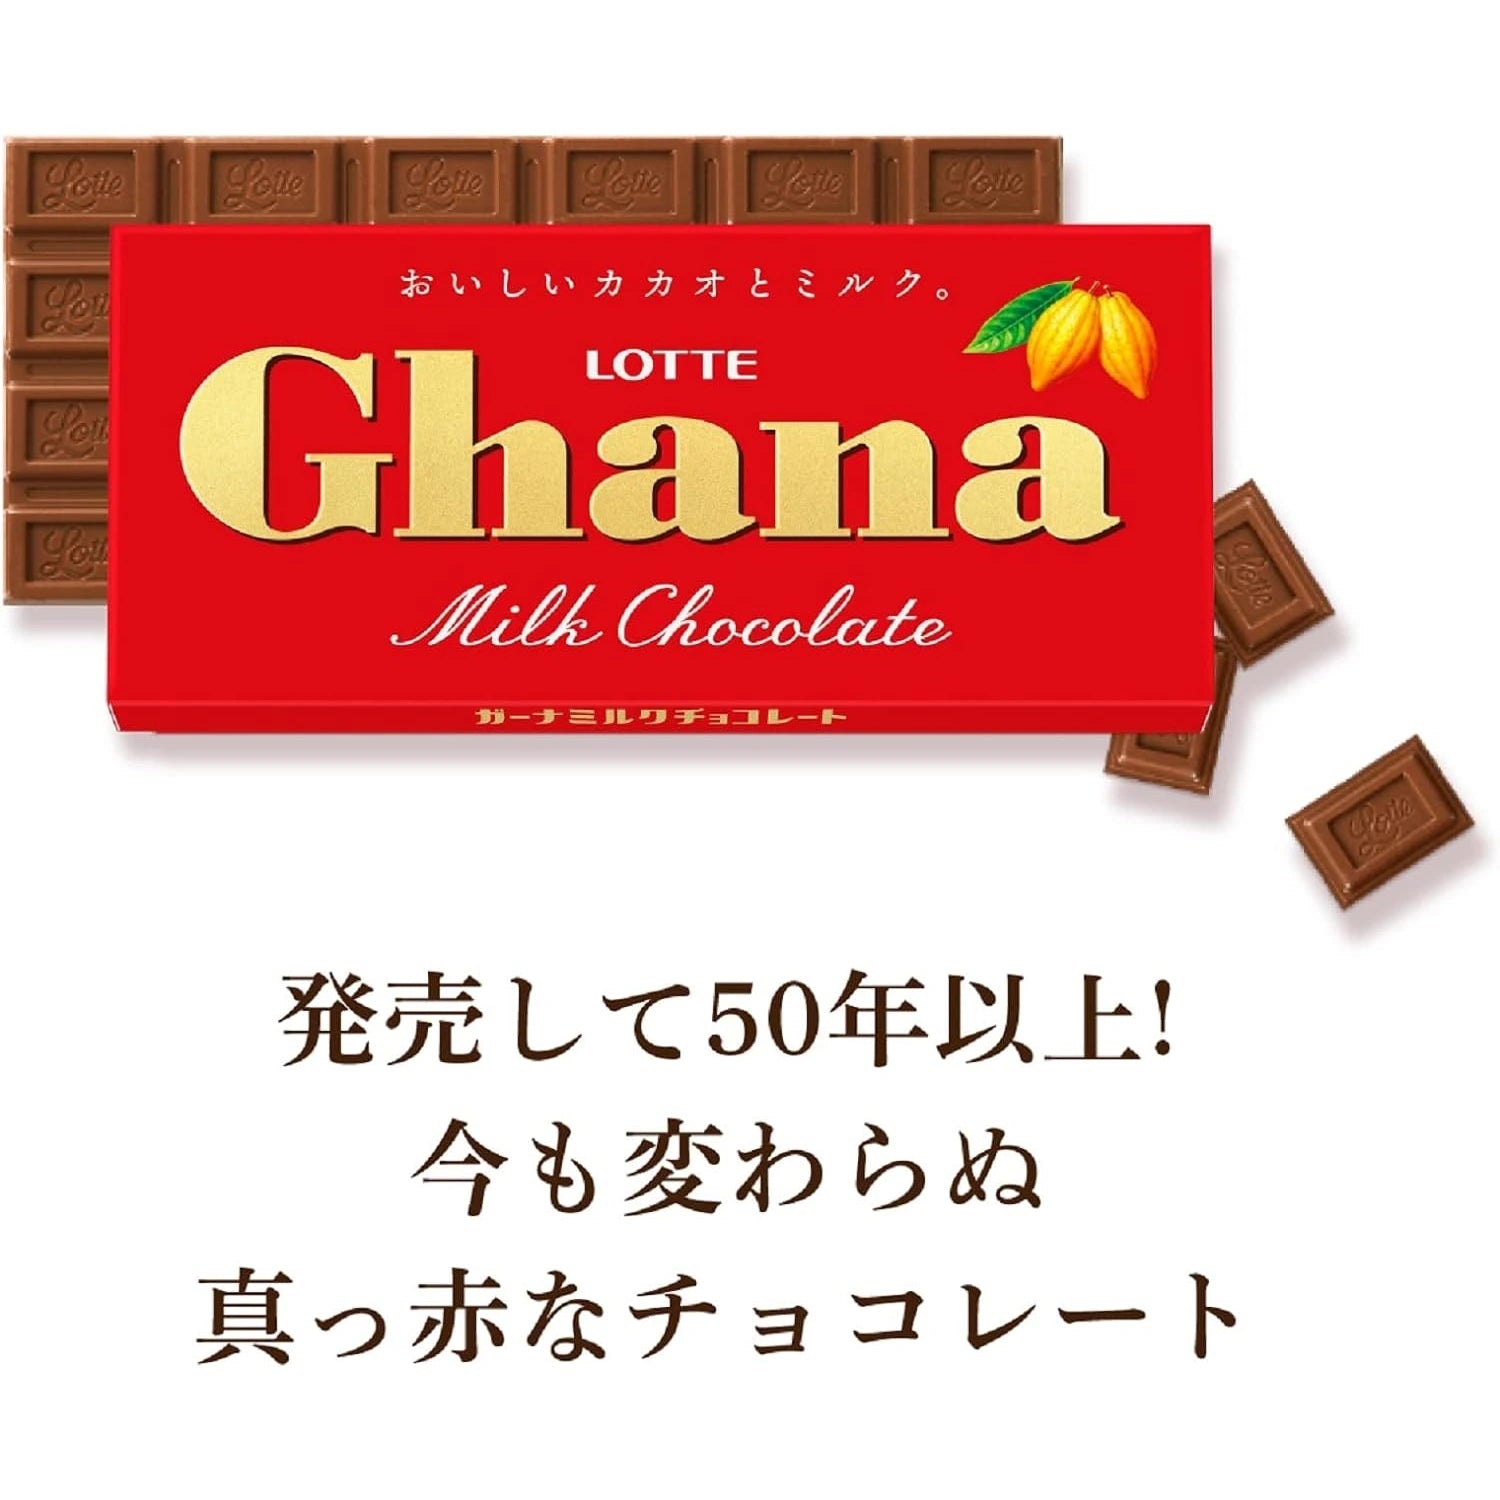 Lotte Ghana Milk Chocolate 50g - Buy Me Japan